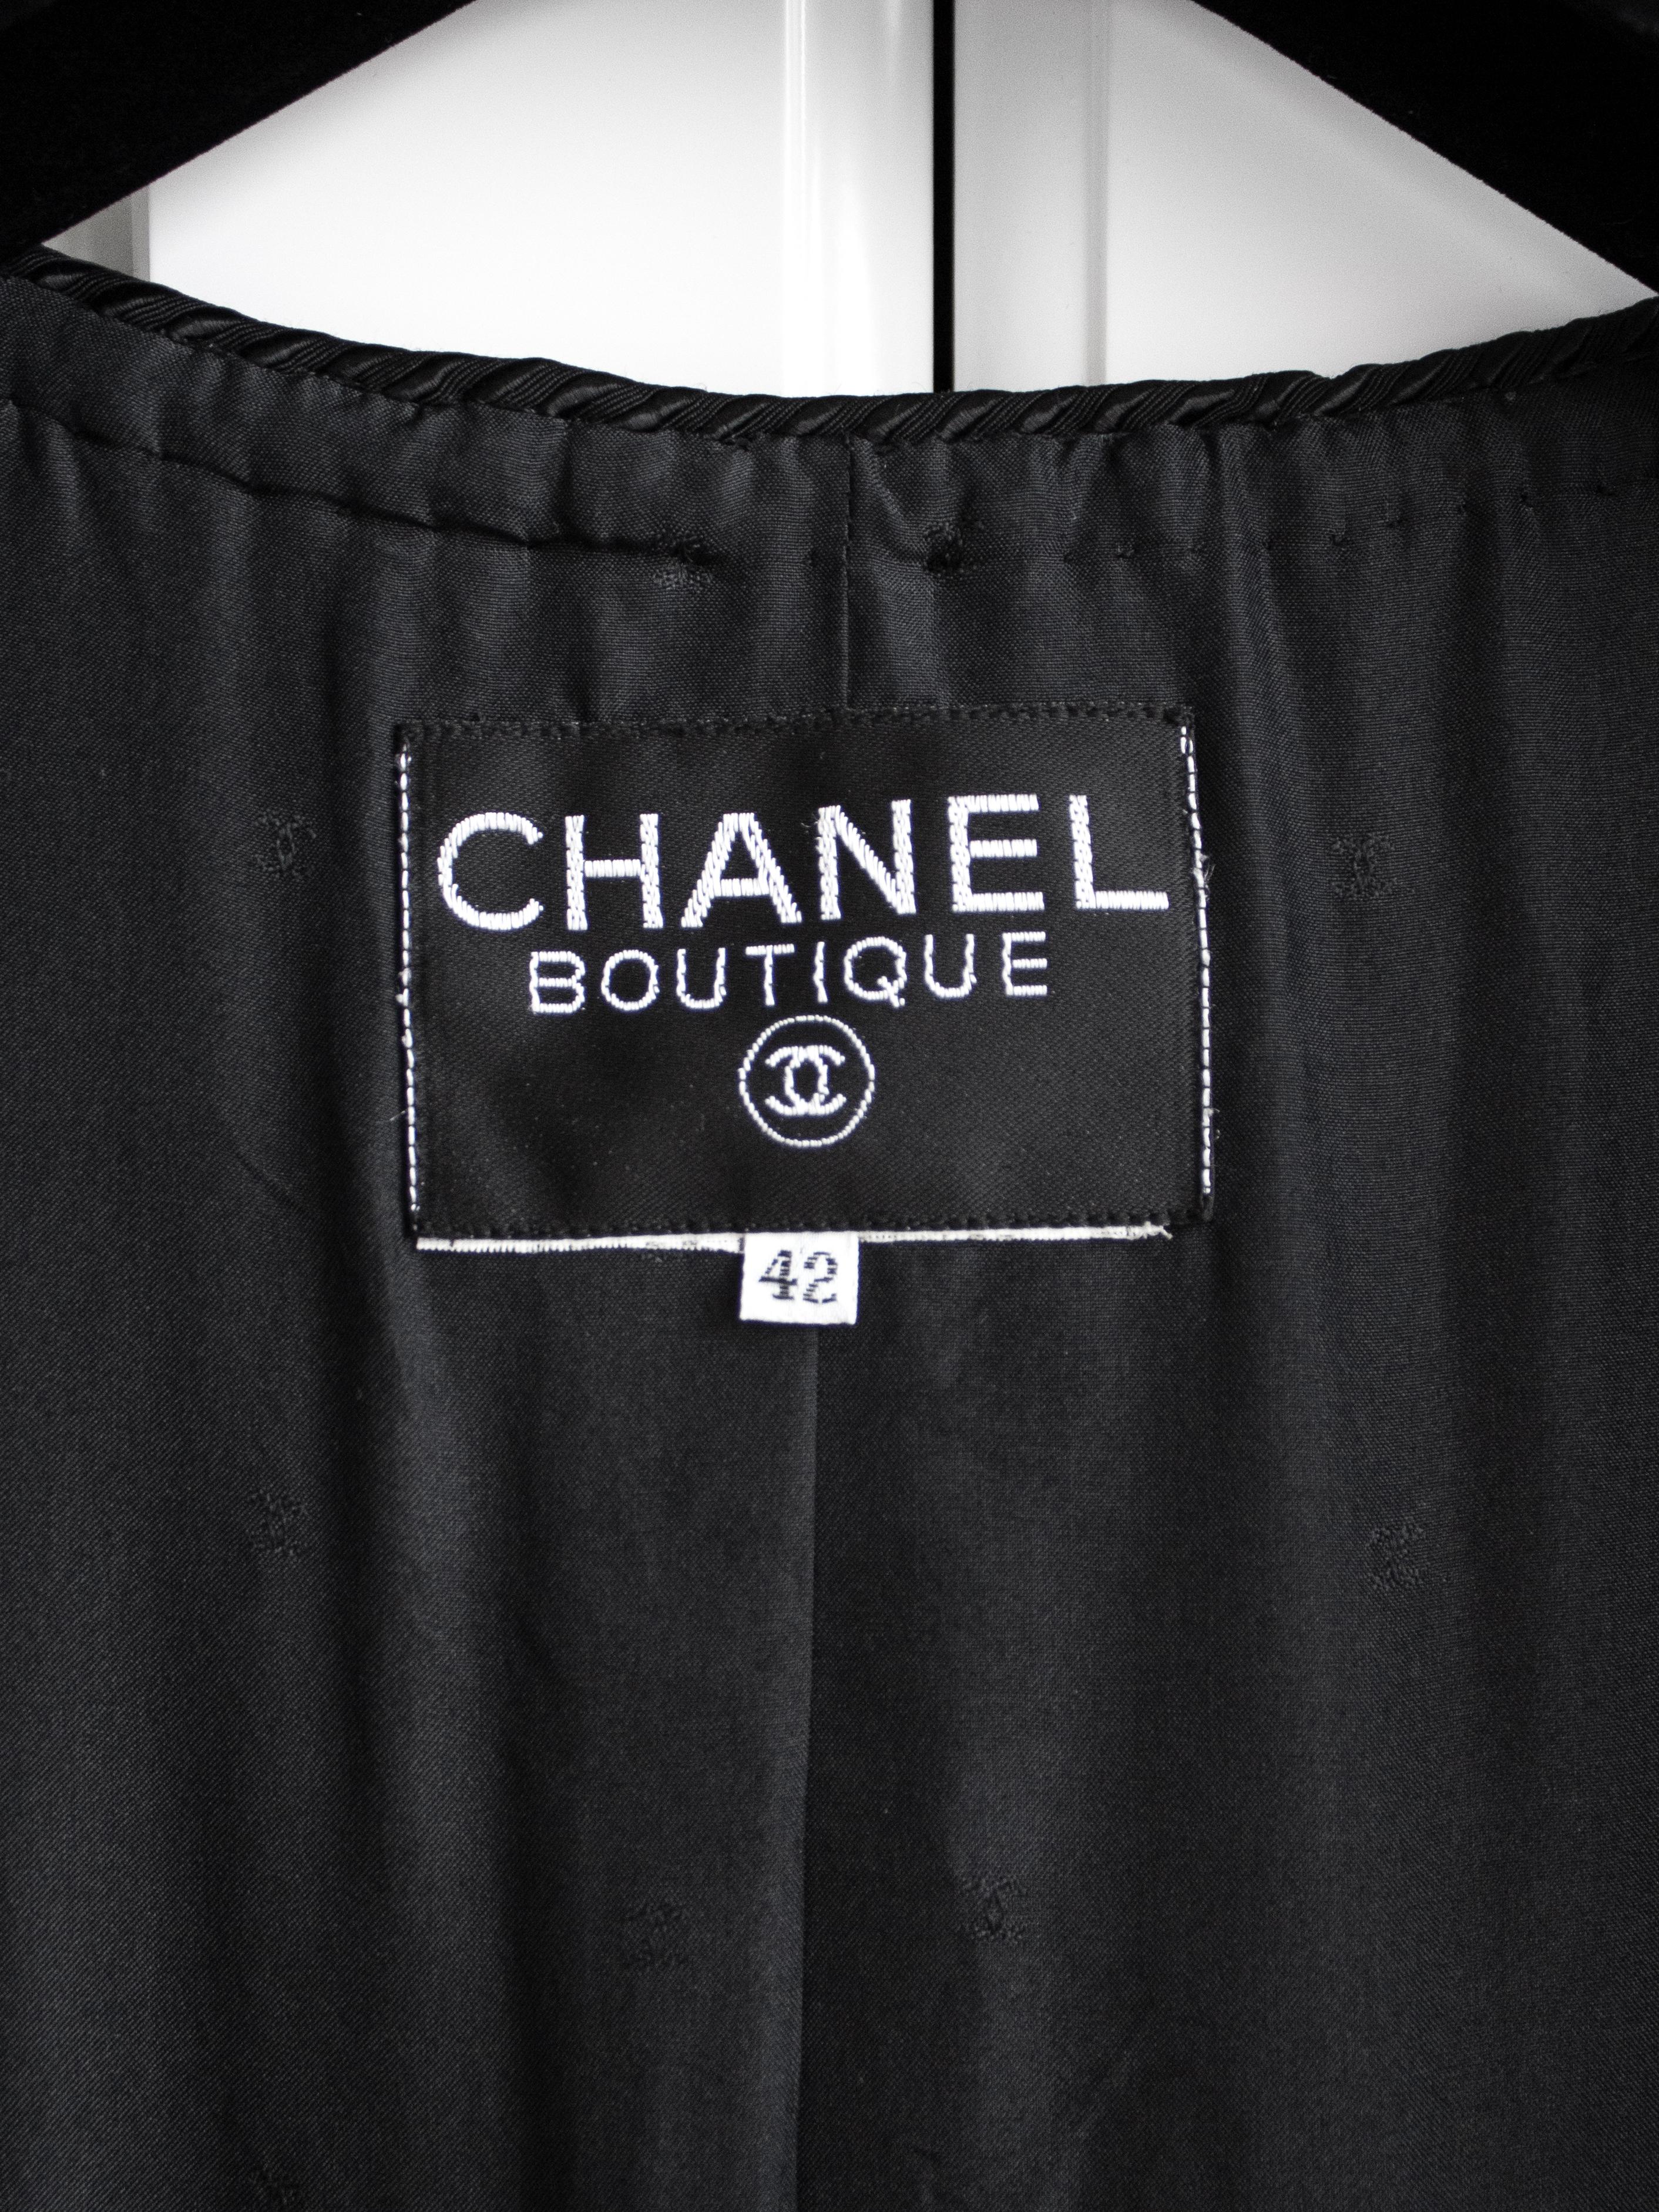 Rare Chanel Vintage S/S 1987 Black Quilted Sequin Embellished Jacket 4